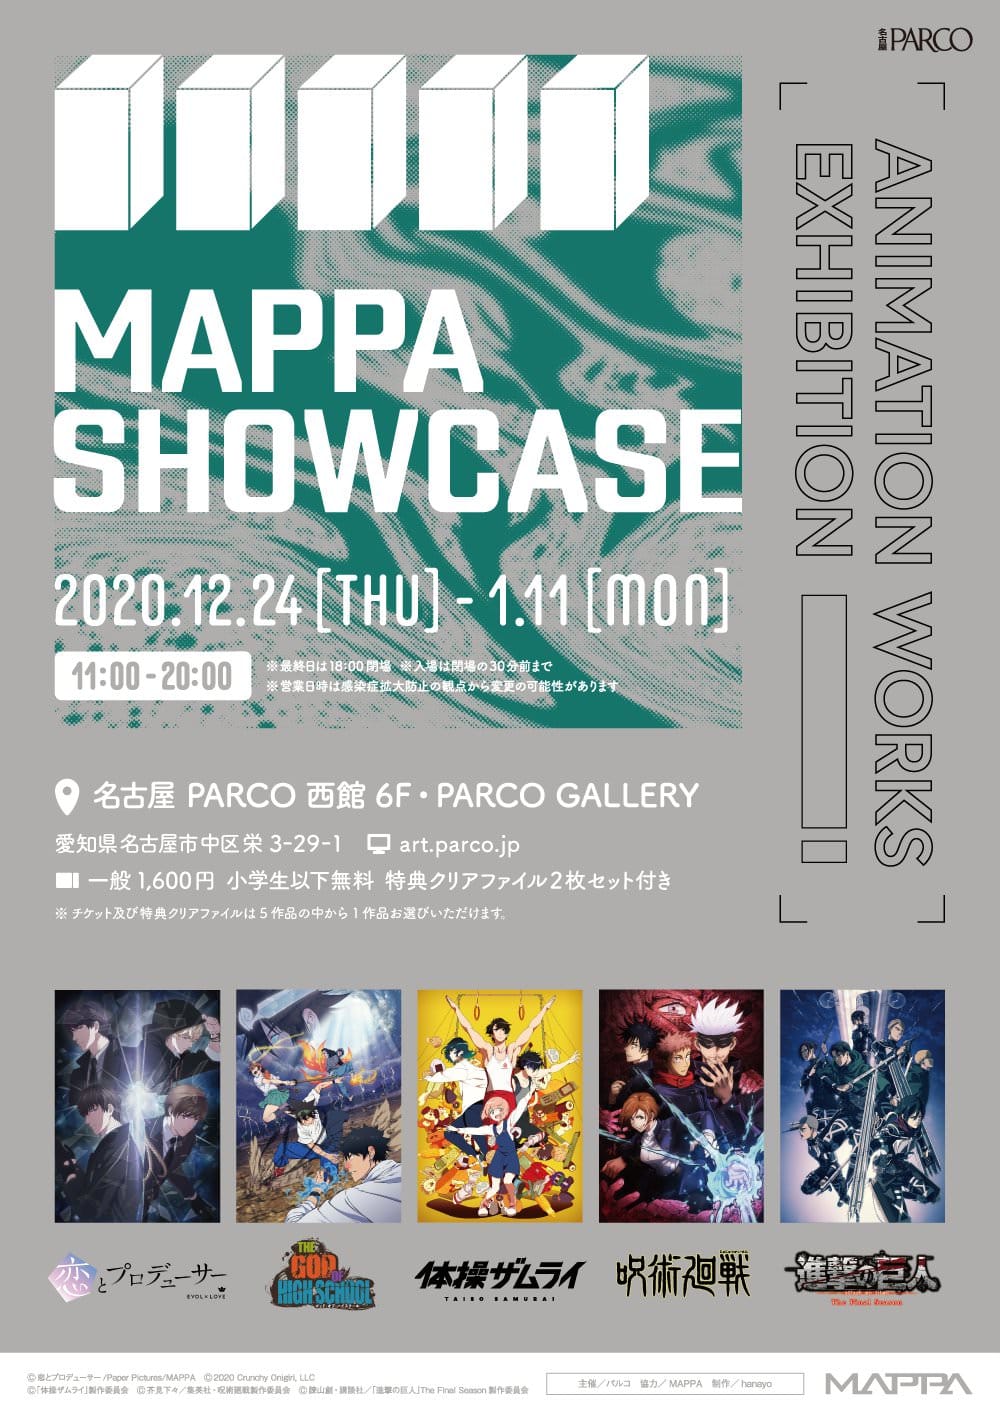 MAPPA SHOWCASE in 名古屋パルコギャラリー 12.24-1.11 企画展開催!!